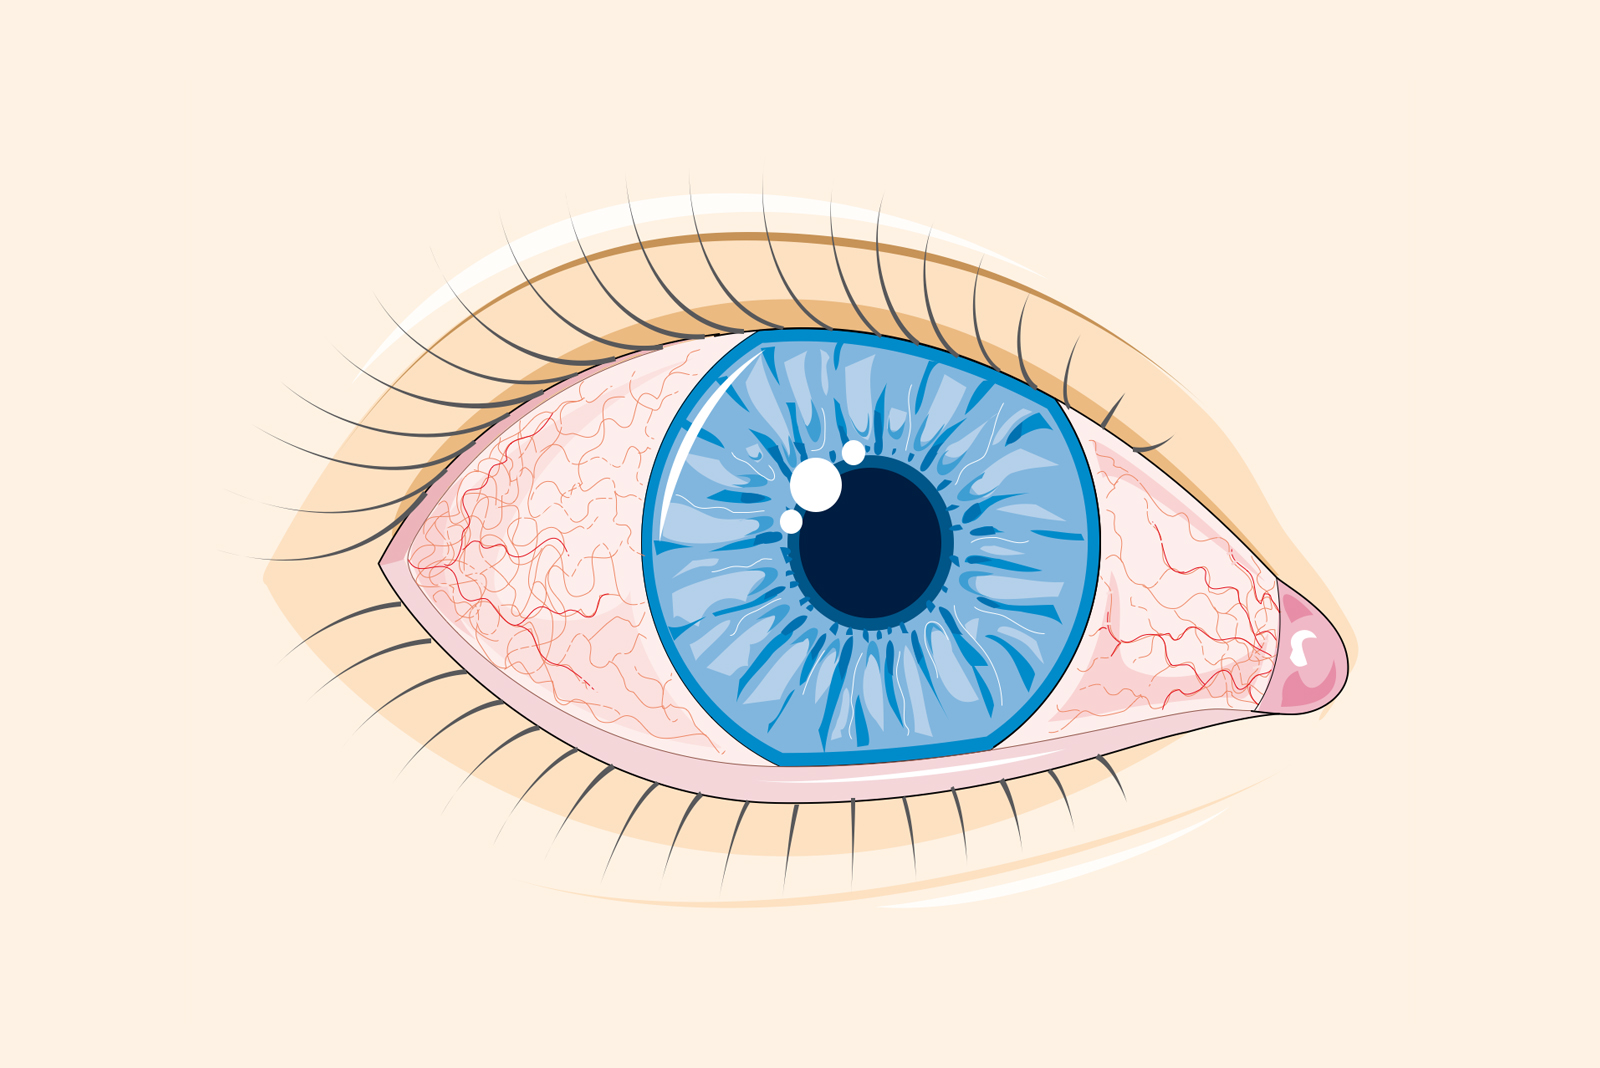 Proceduri: Proceduri oftalmologice